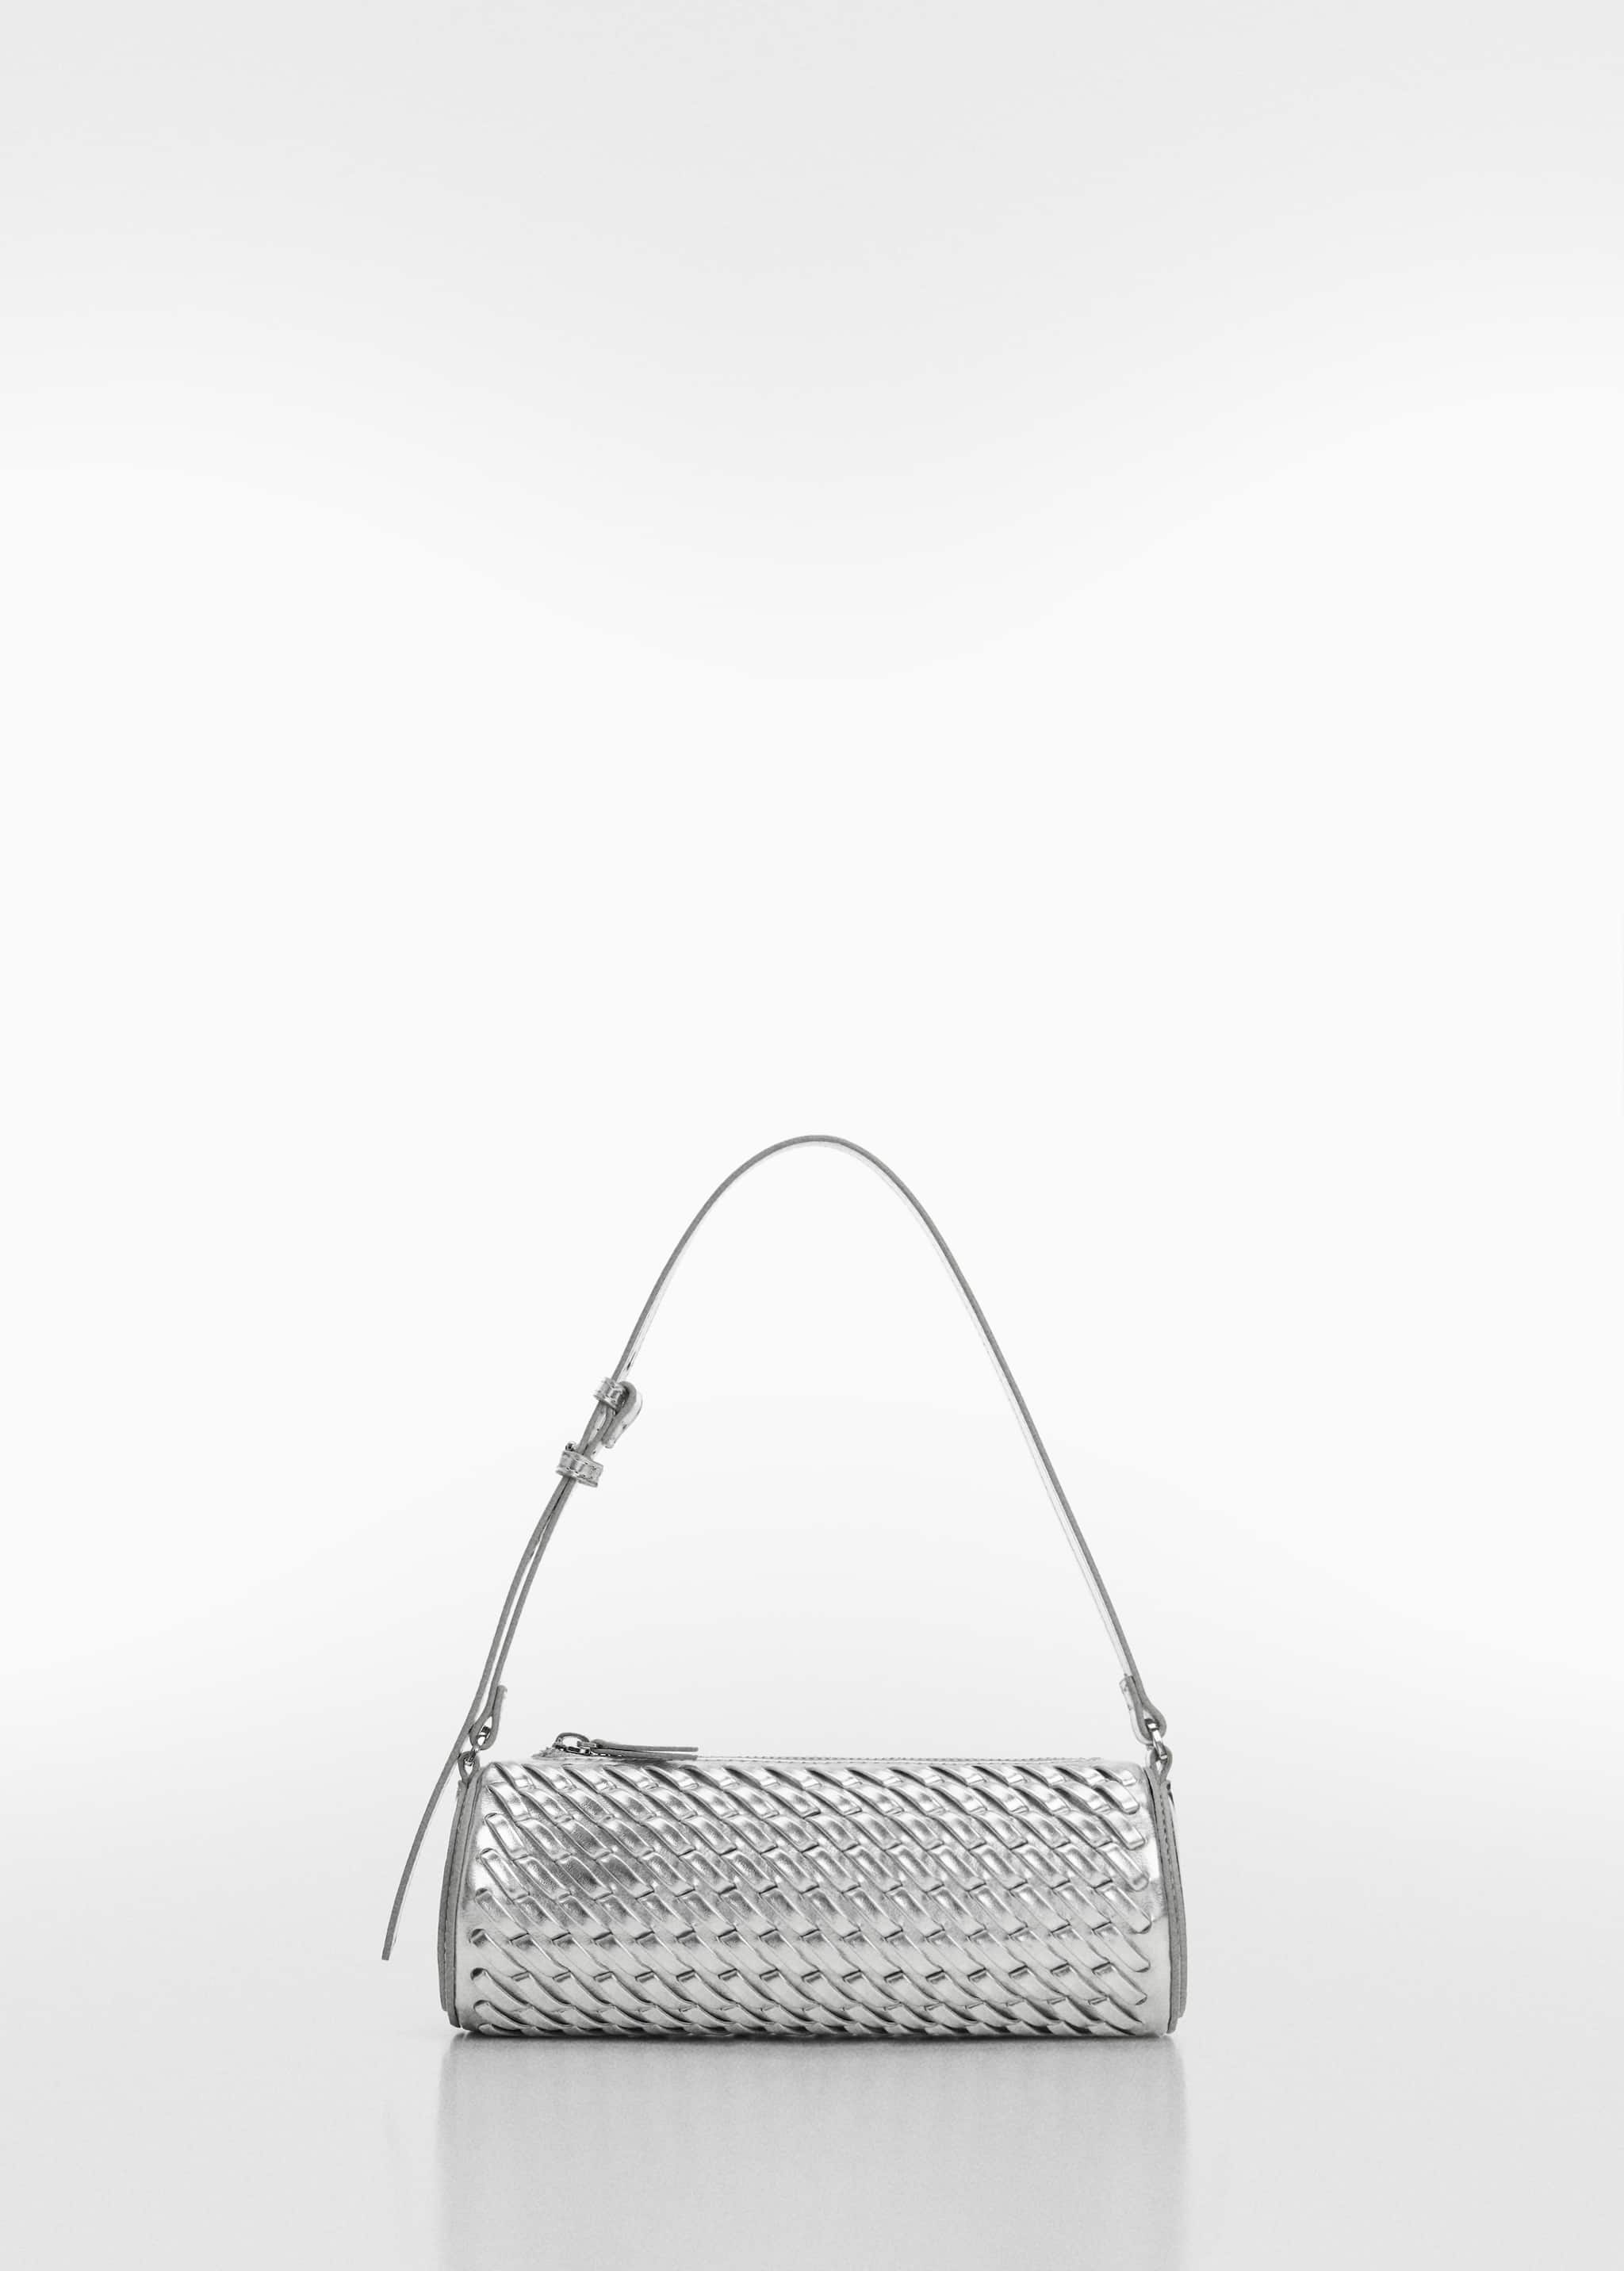 Цилиндрическая плетеная сумка - Изделие без модели